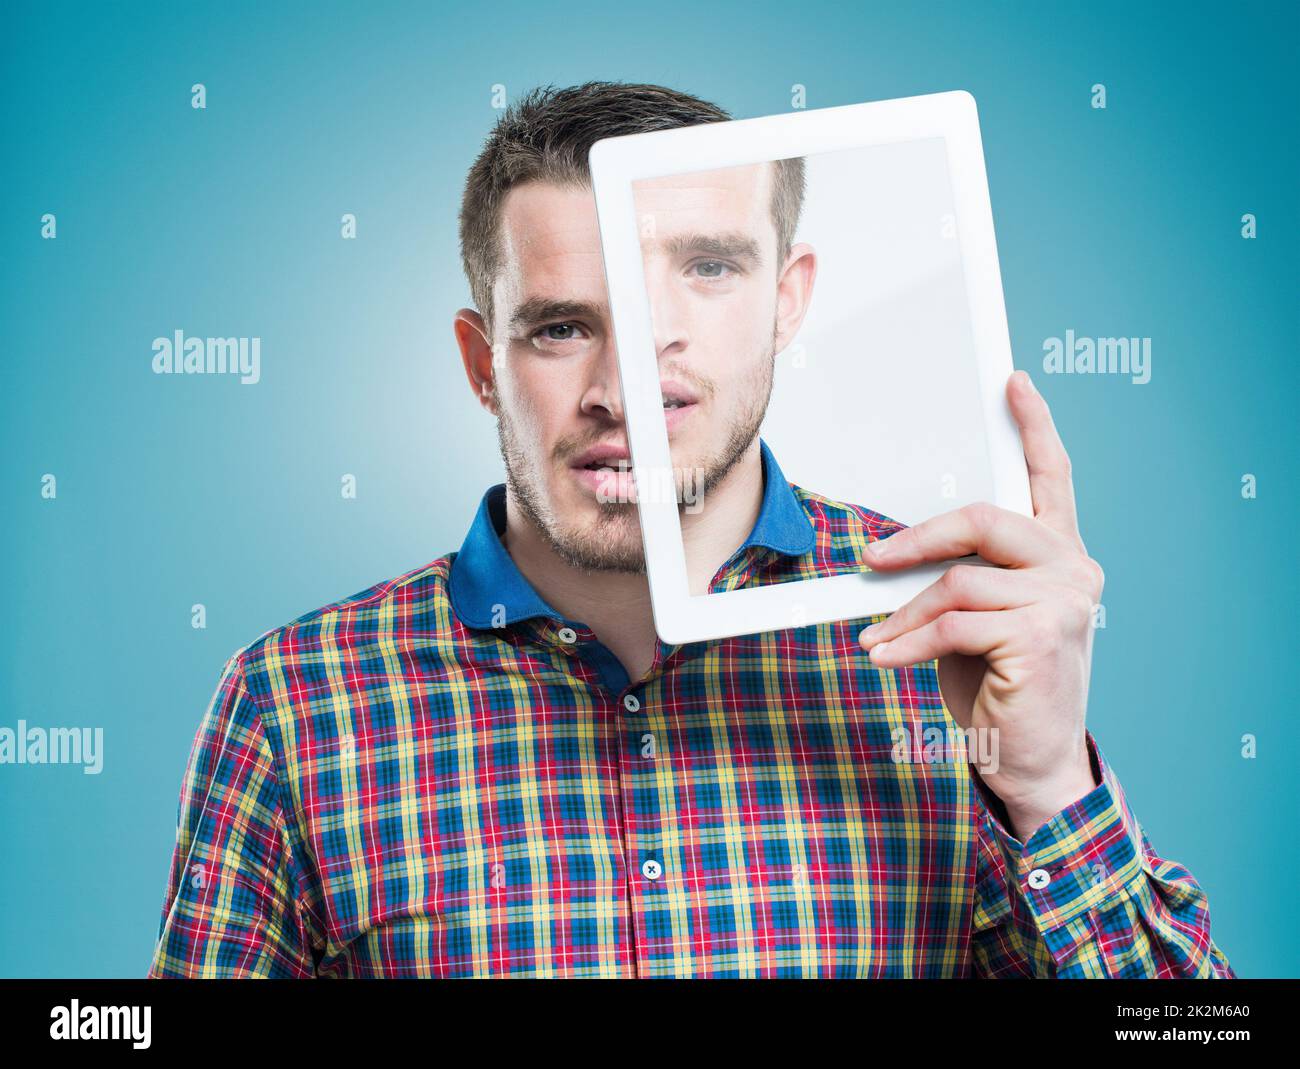 Personalisierte Technologie - Ein Teil des täglichen Lebens. Ein junger Mann, der ein fortschrittliches digitales Tablet vor seinem Gesicht hält. Stockfoto